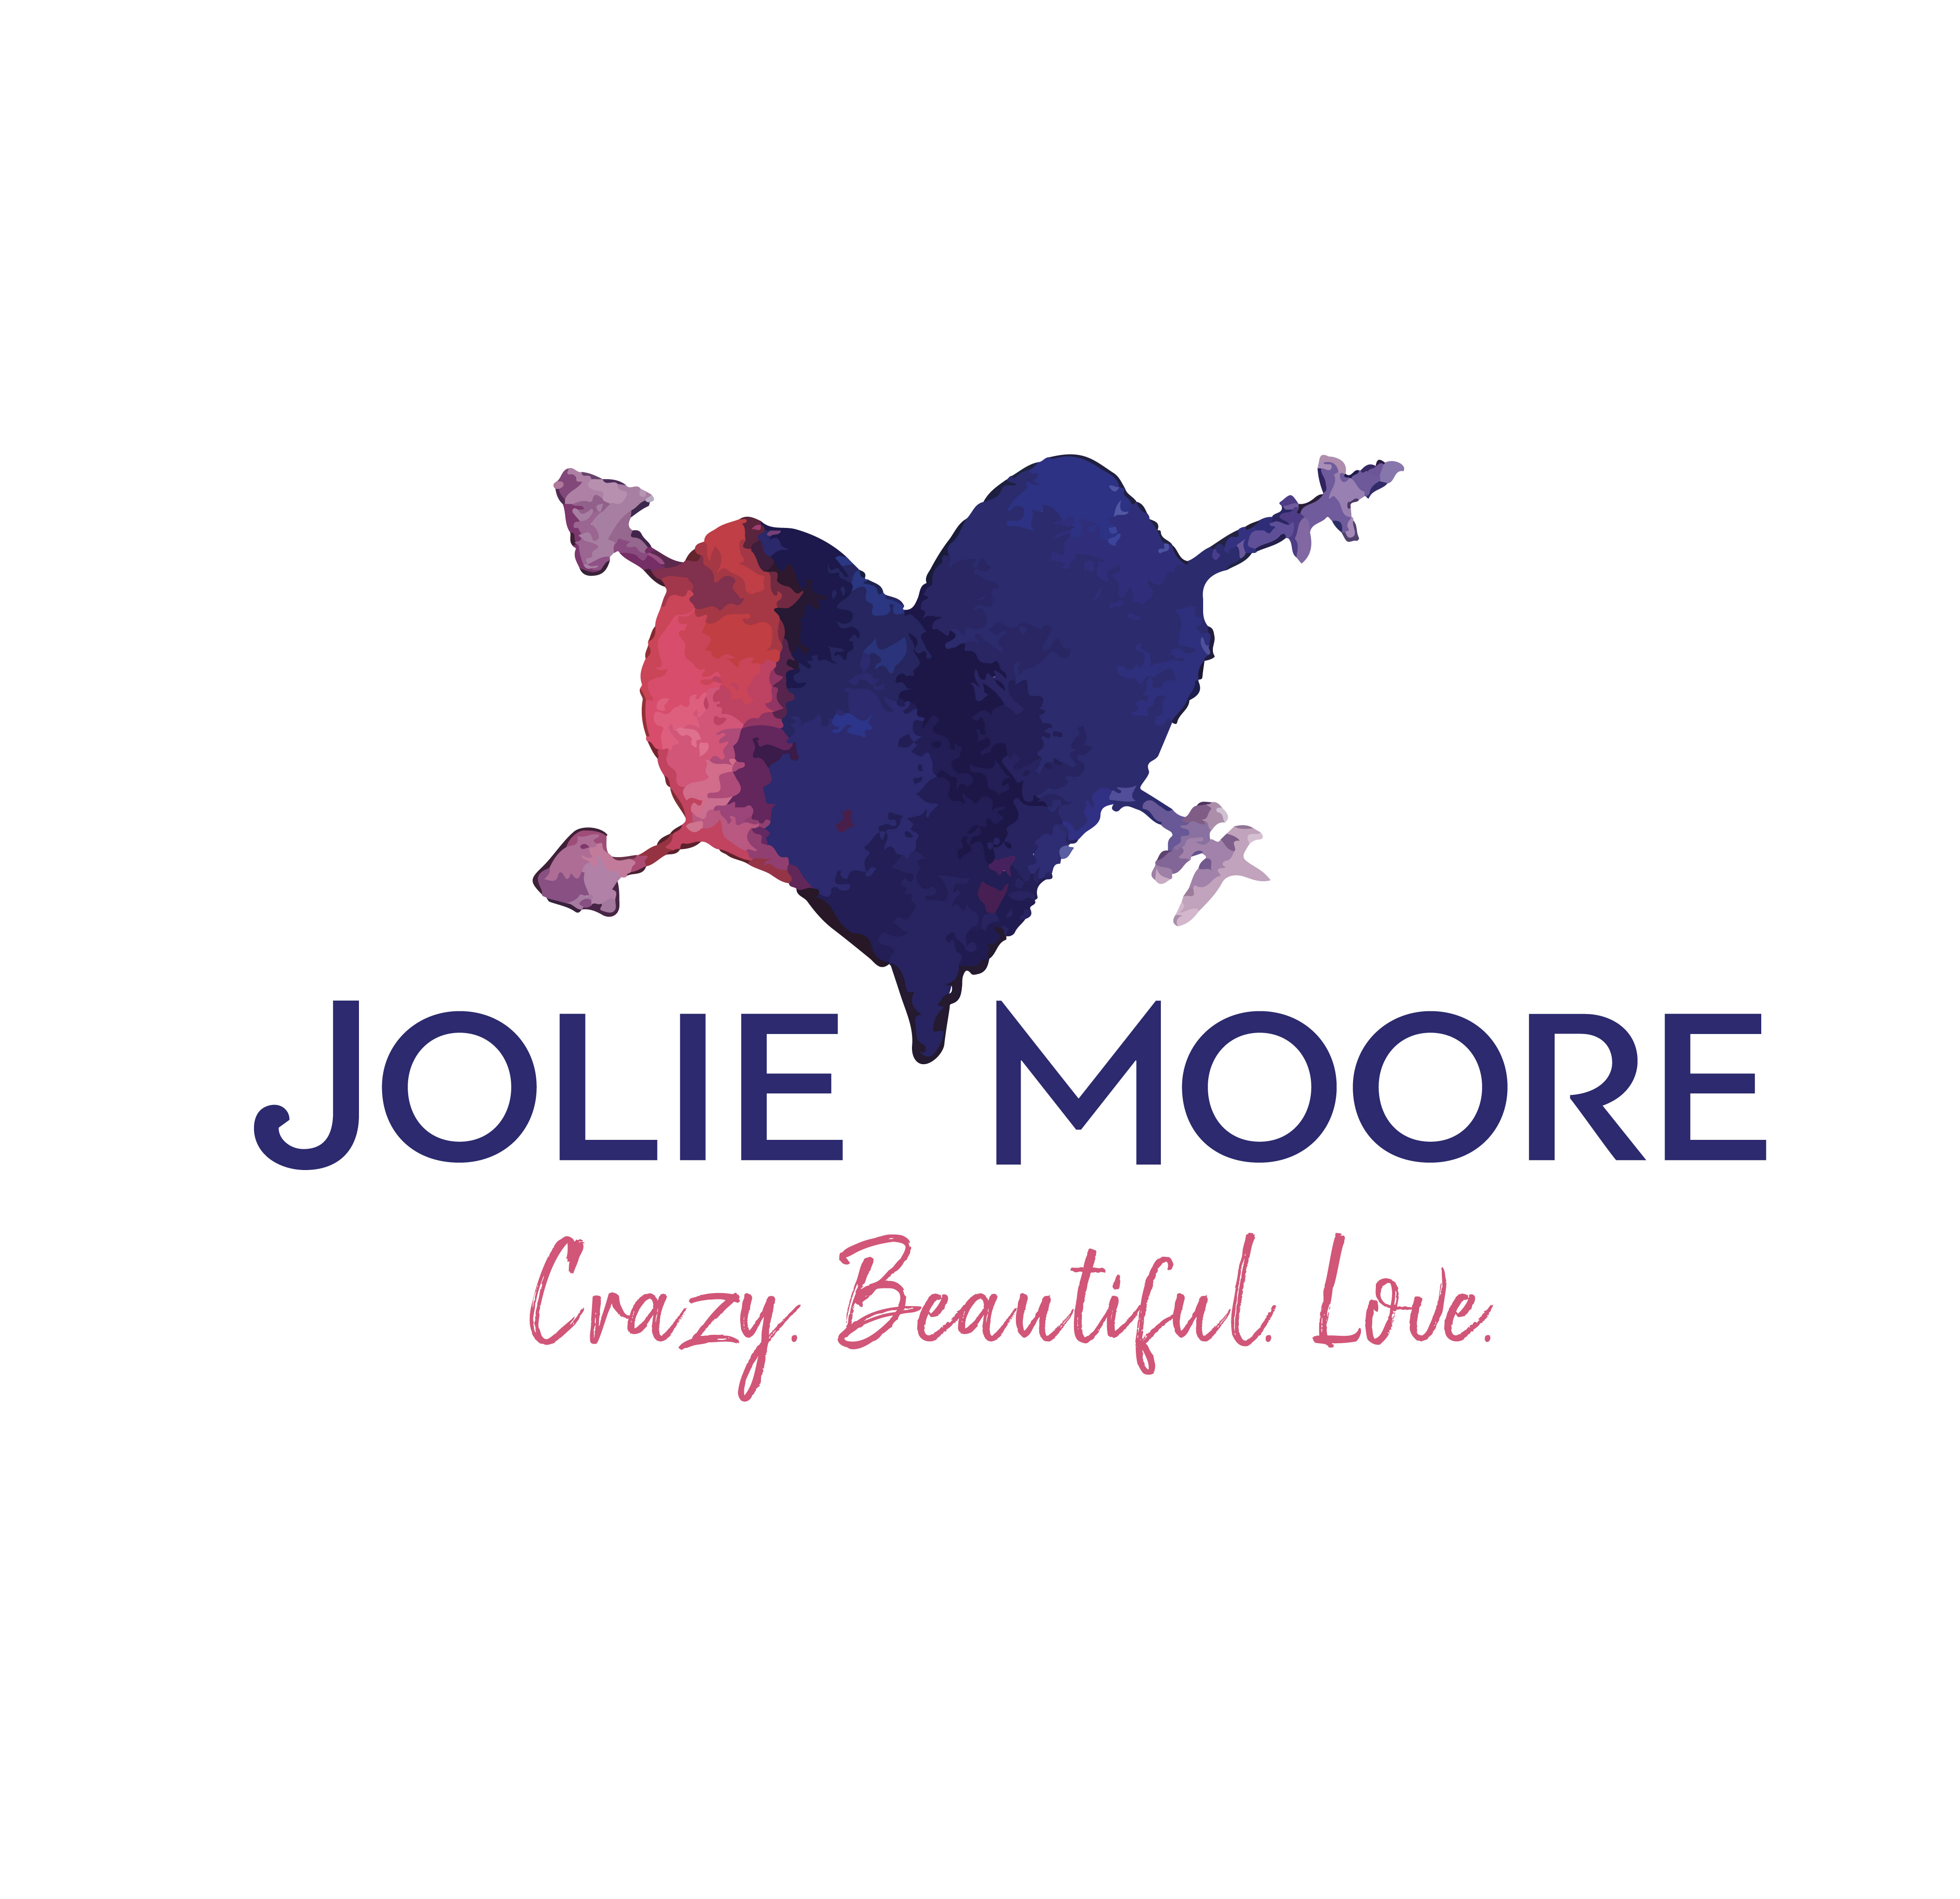 Jolie Moore